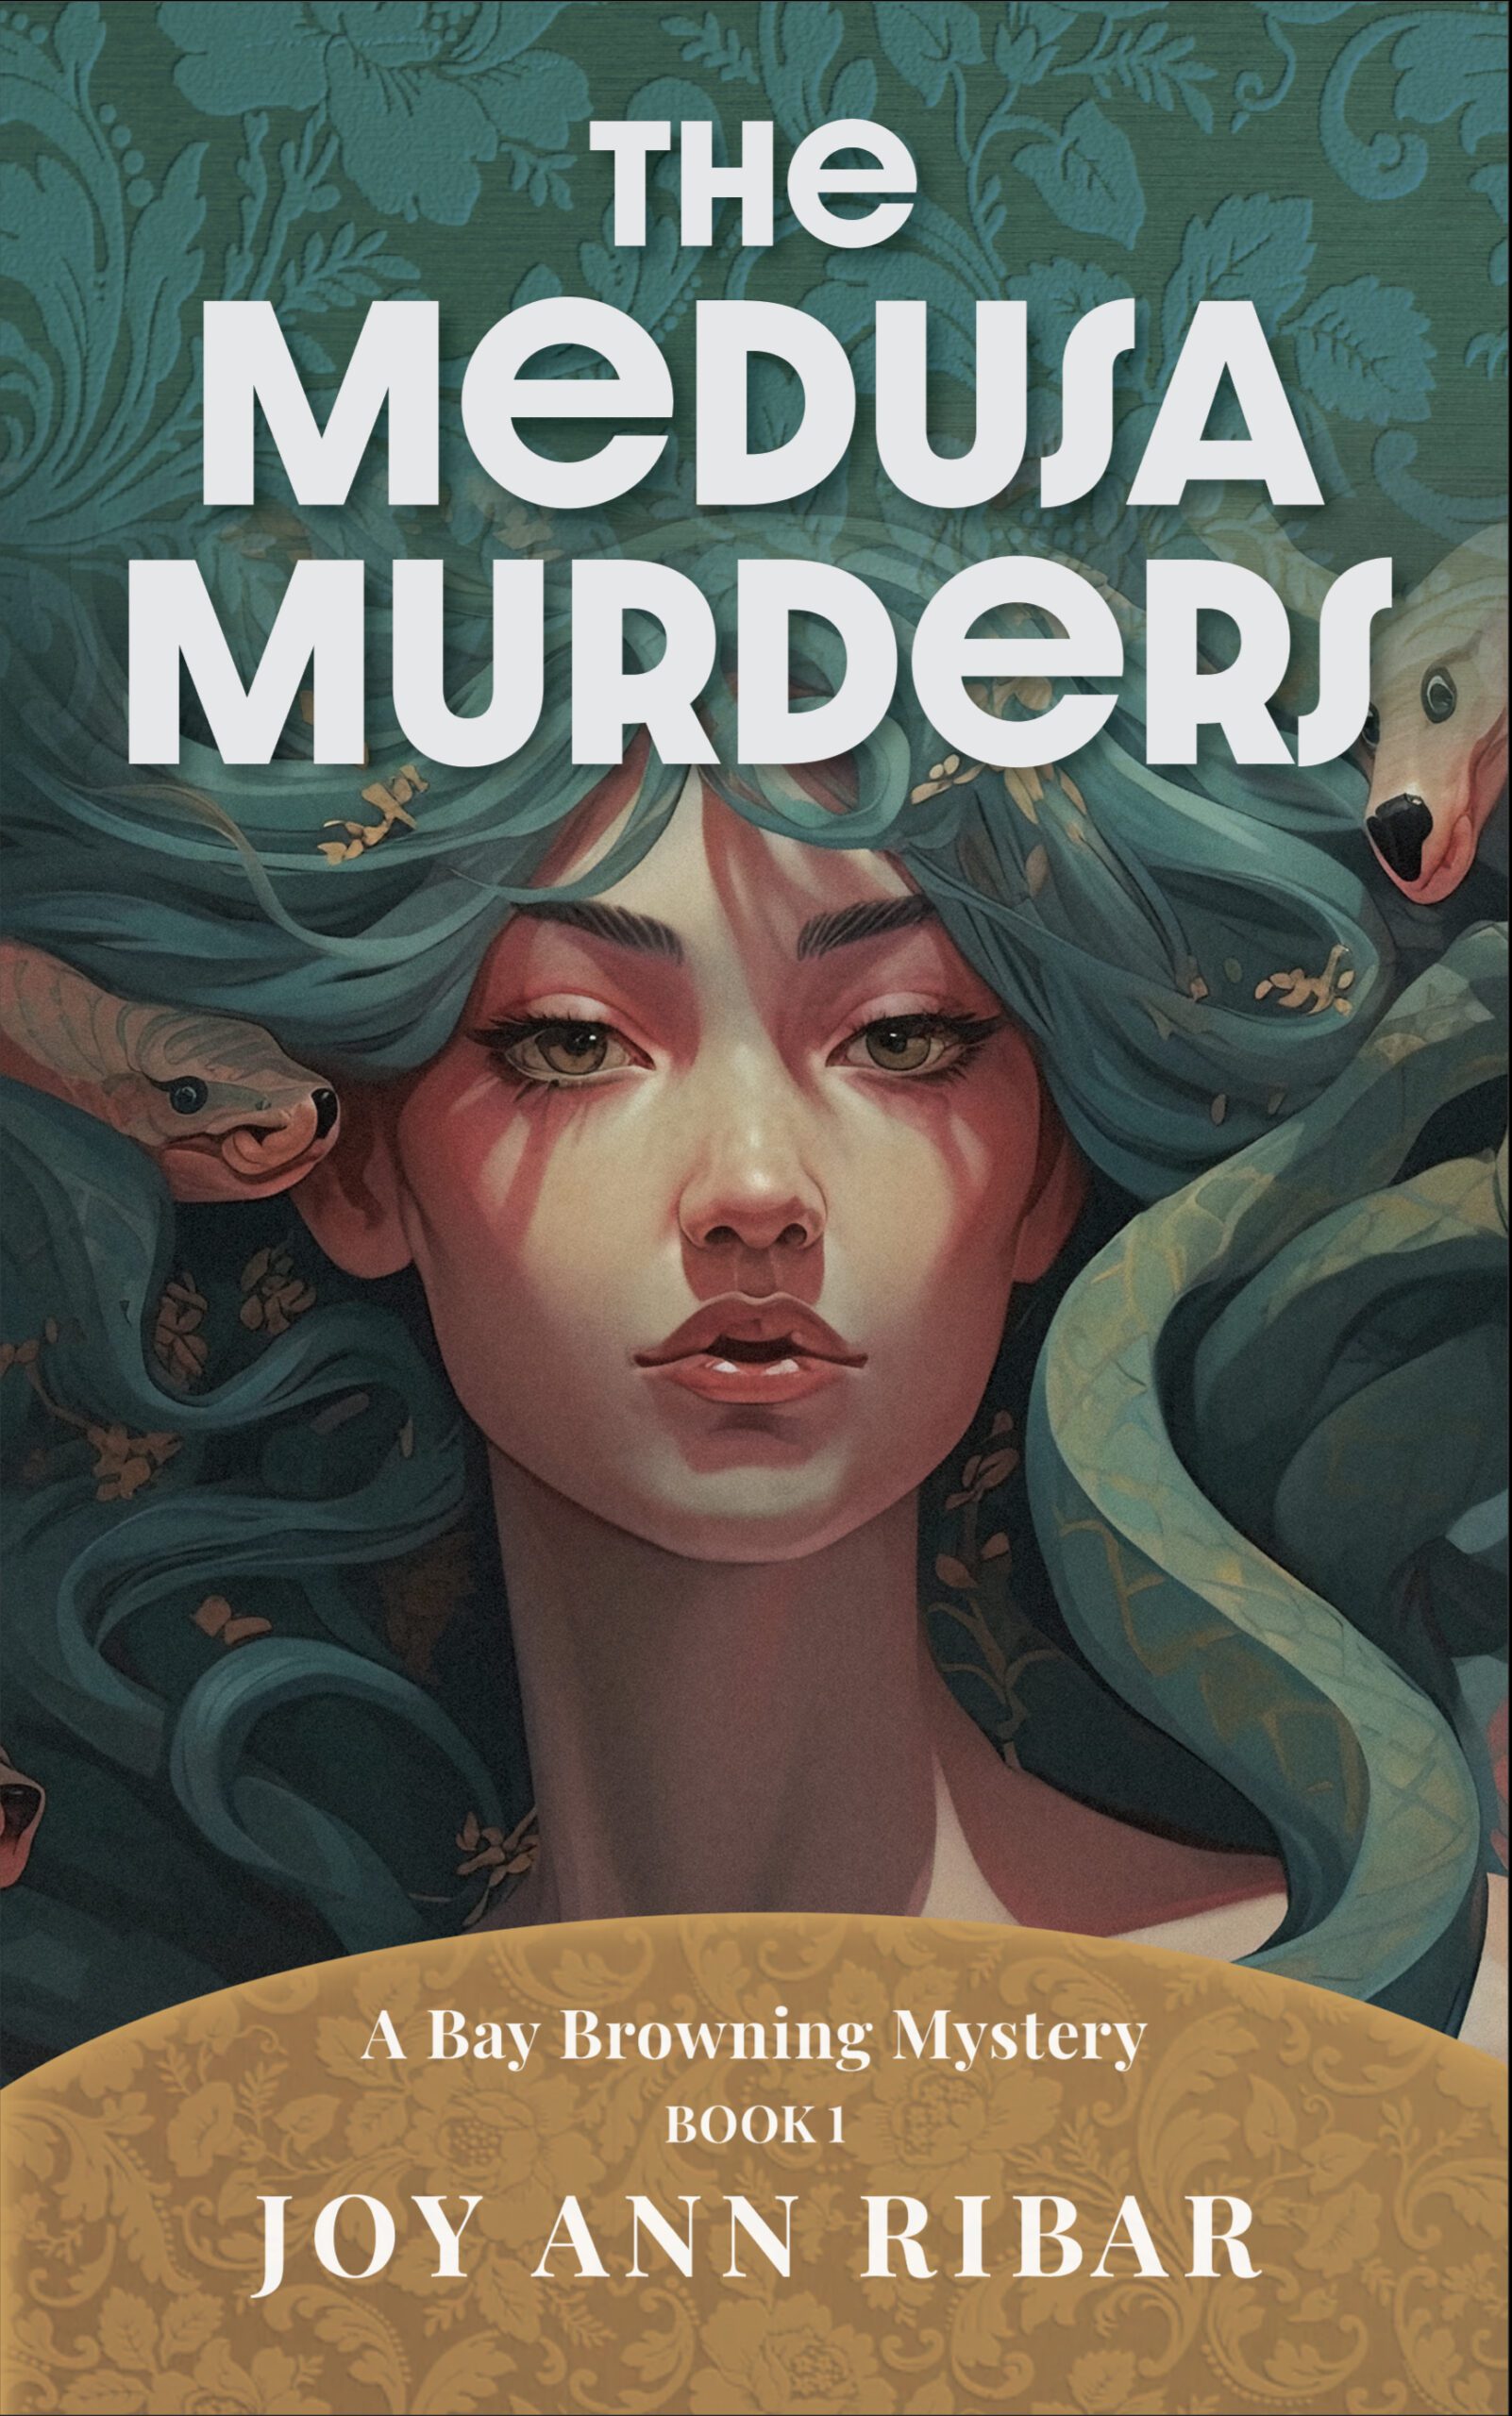 The Medusa Murders by Joy Ann Ribar